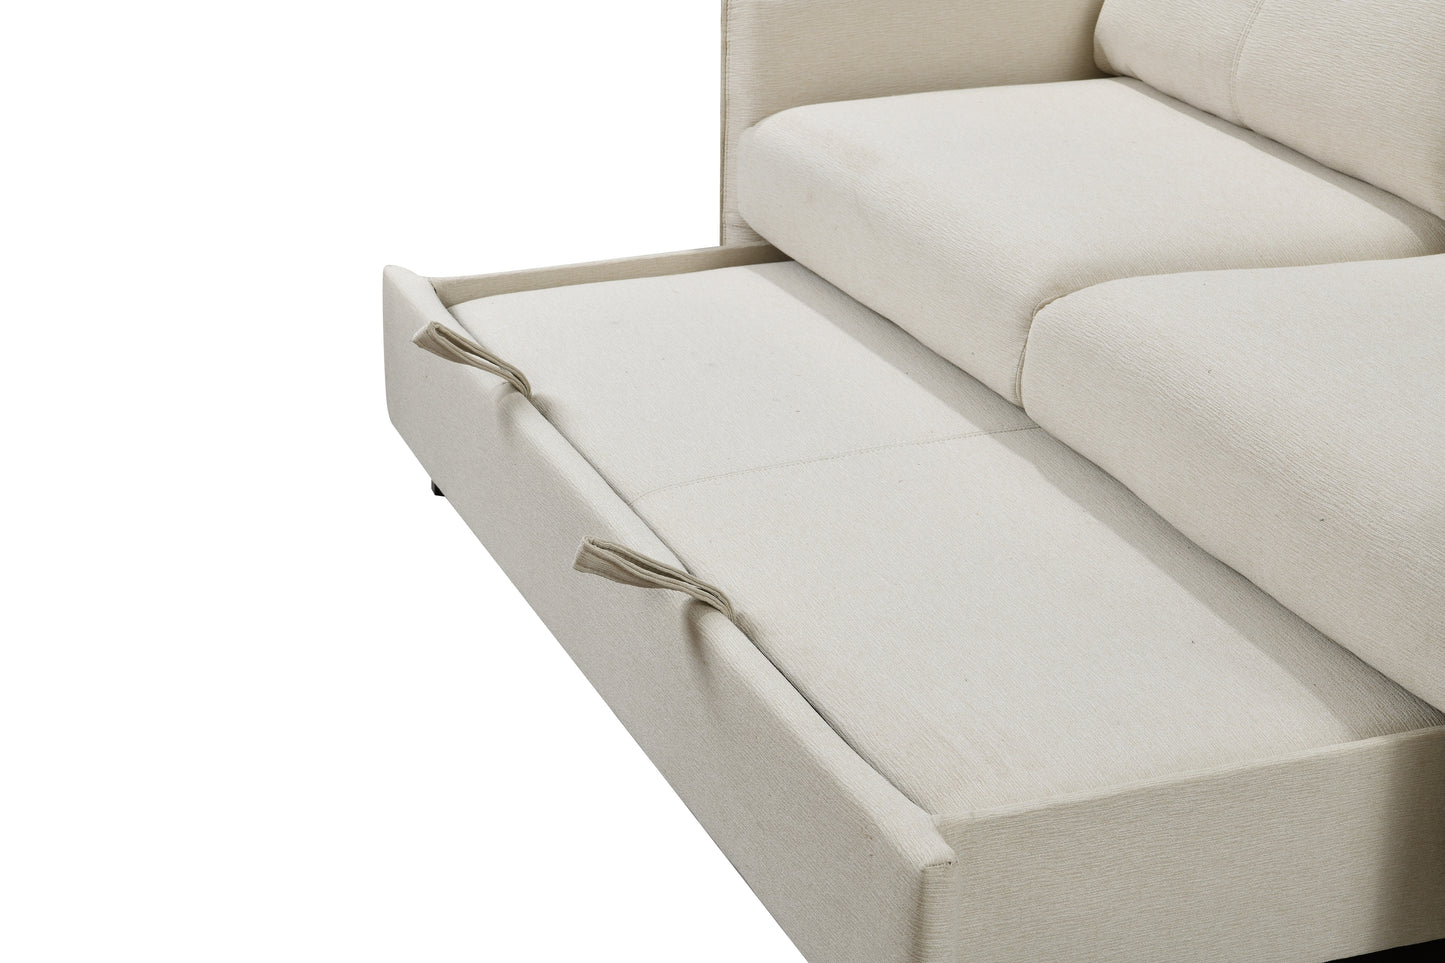 Lux Convertible Sofa sleeper in Beige